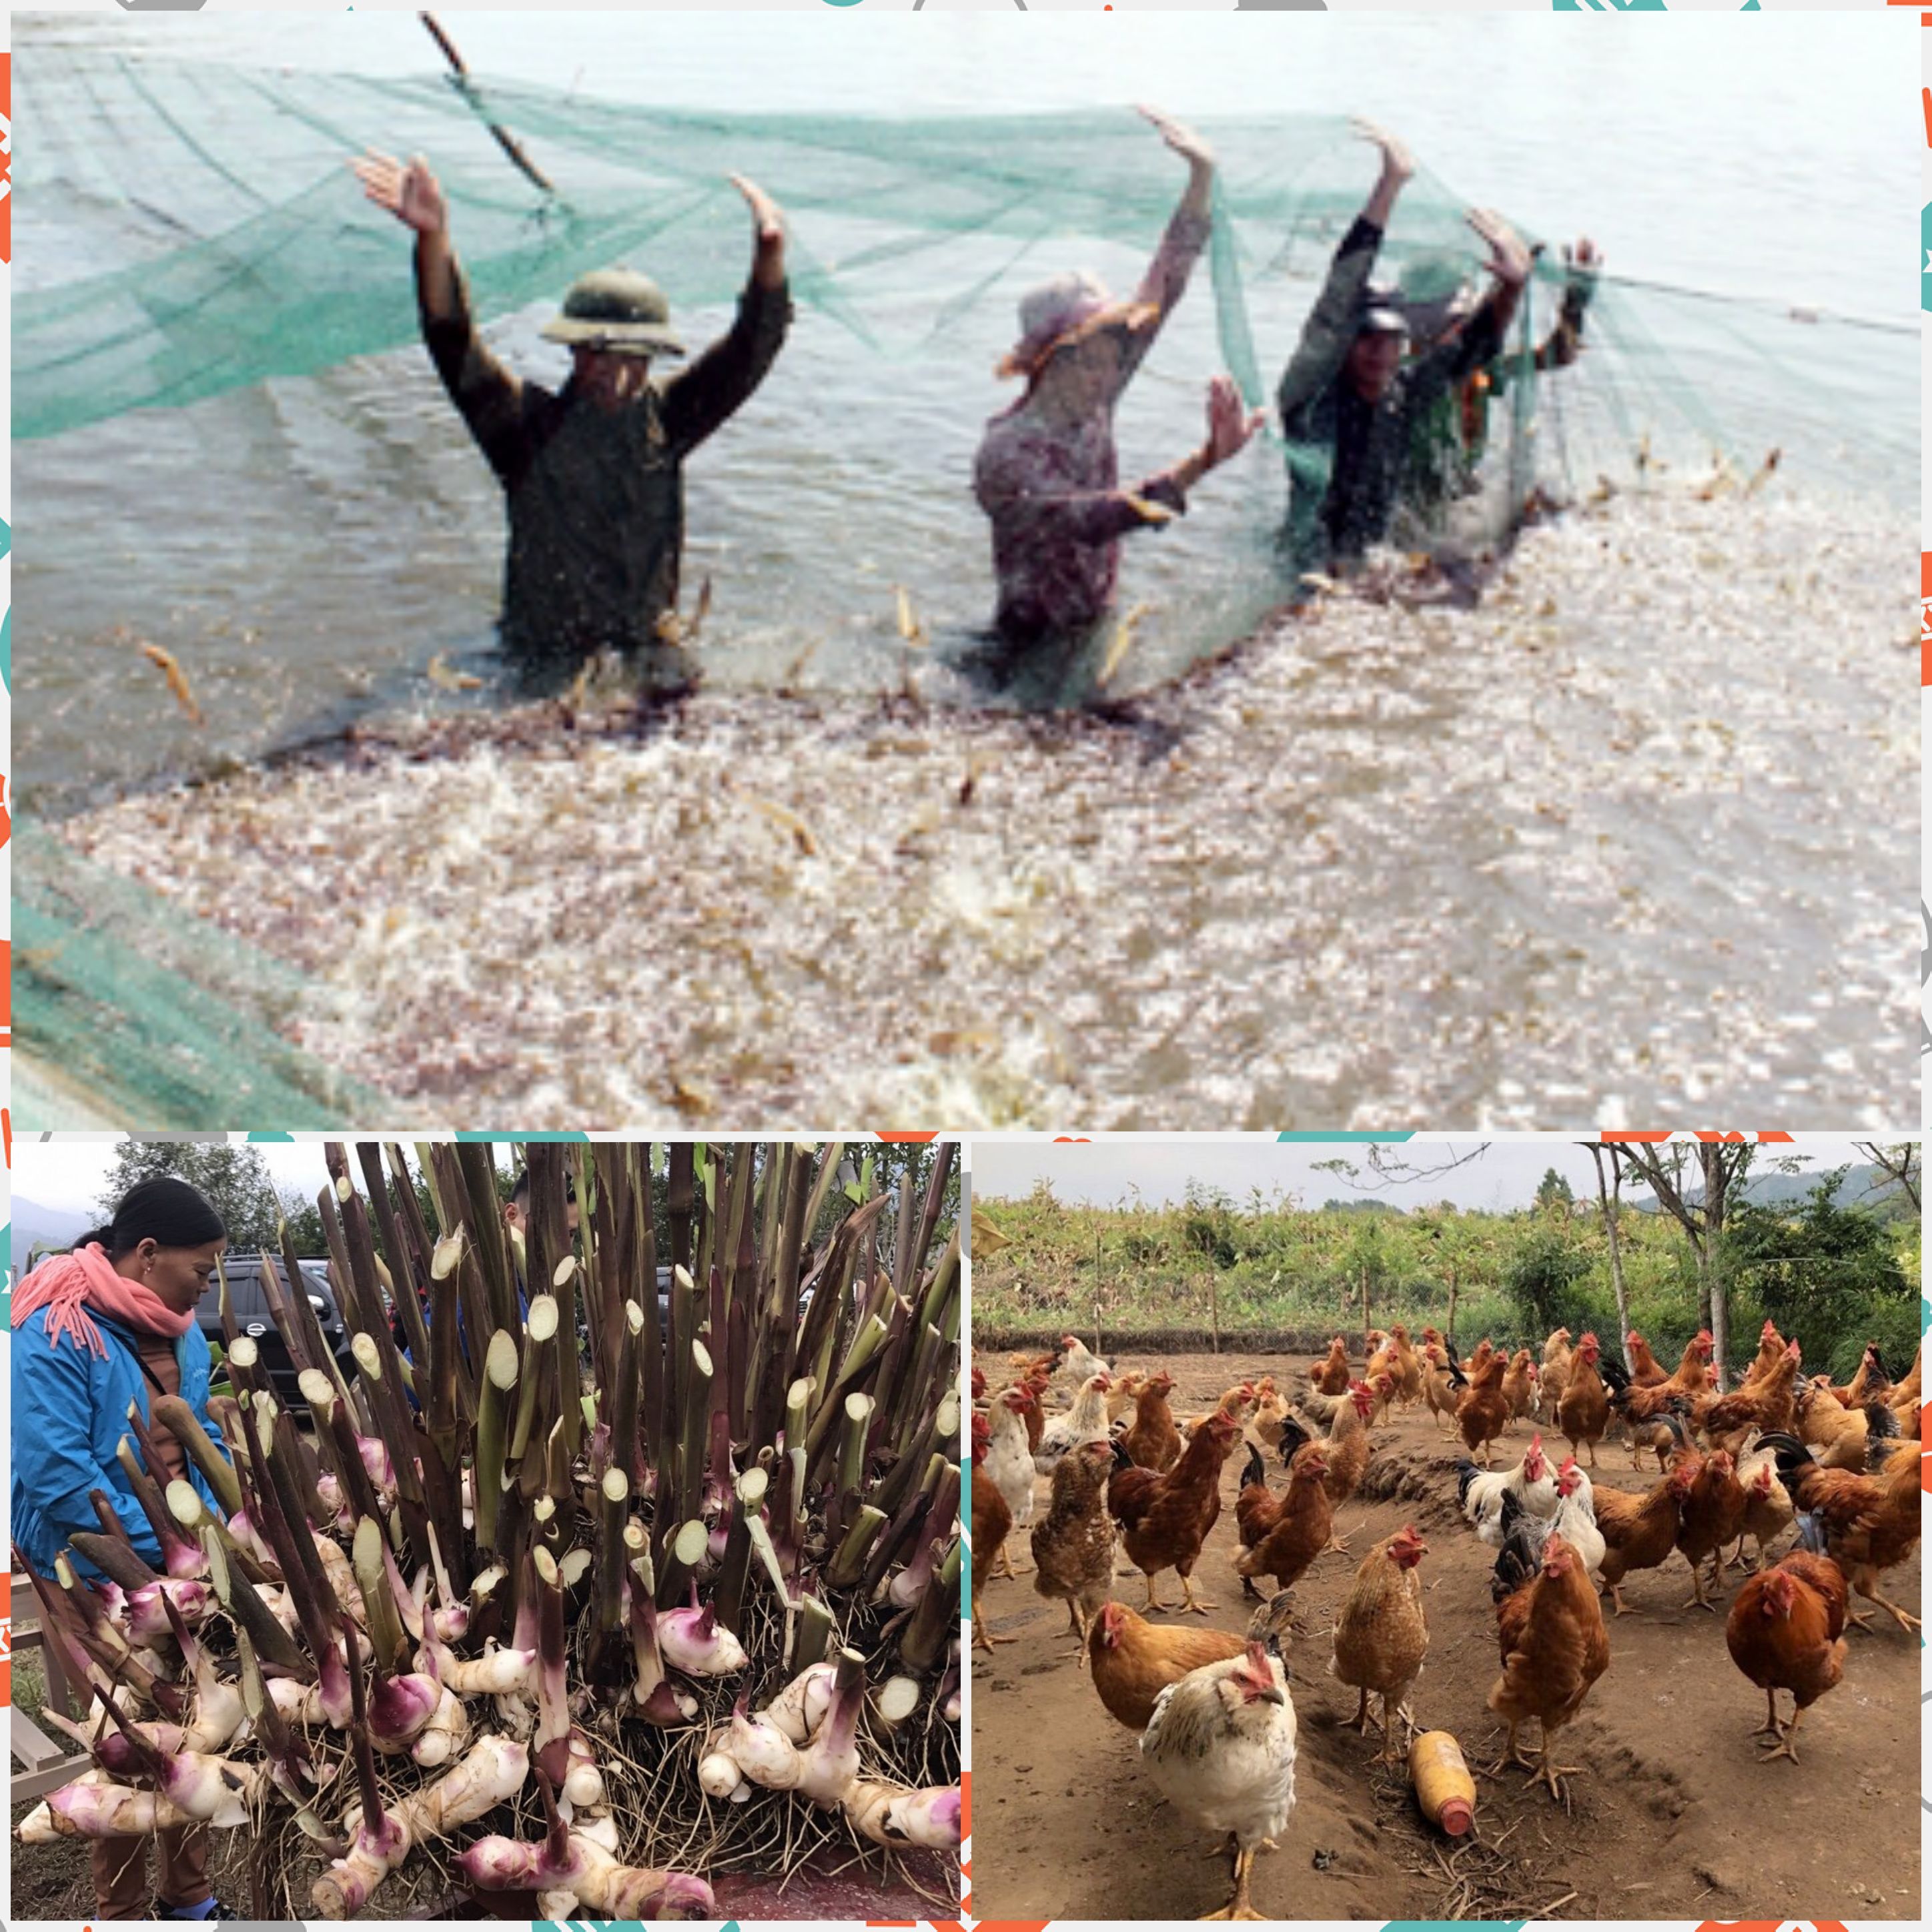 Hiện Tiên Yên đã hình thành vùng sản xuất tập trung nuôi tôm thẻ chân trắng, trồng cây dong riềng và chăn nuôi gà bản địa